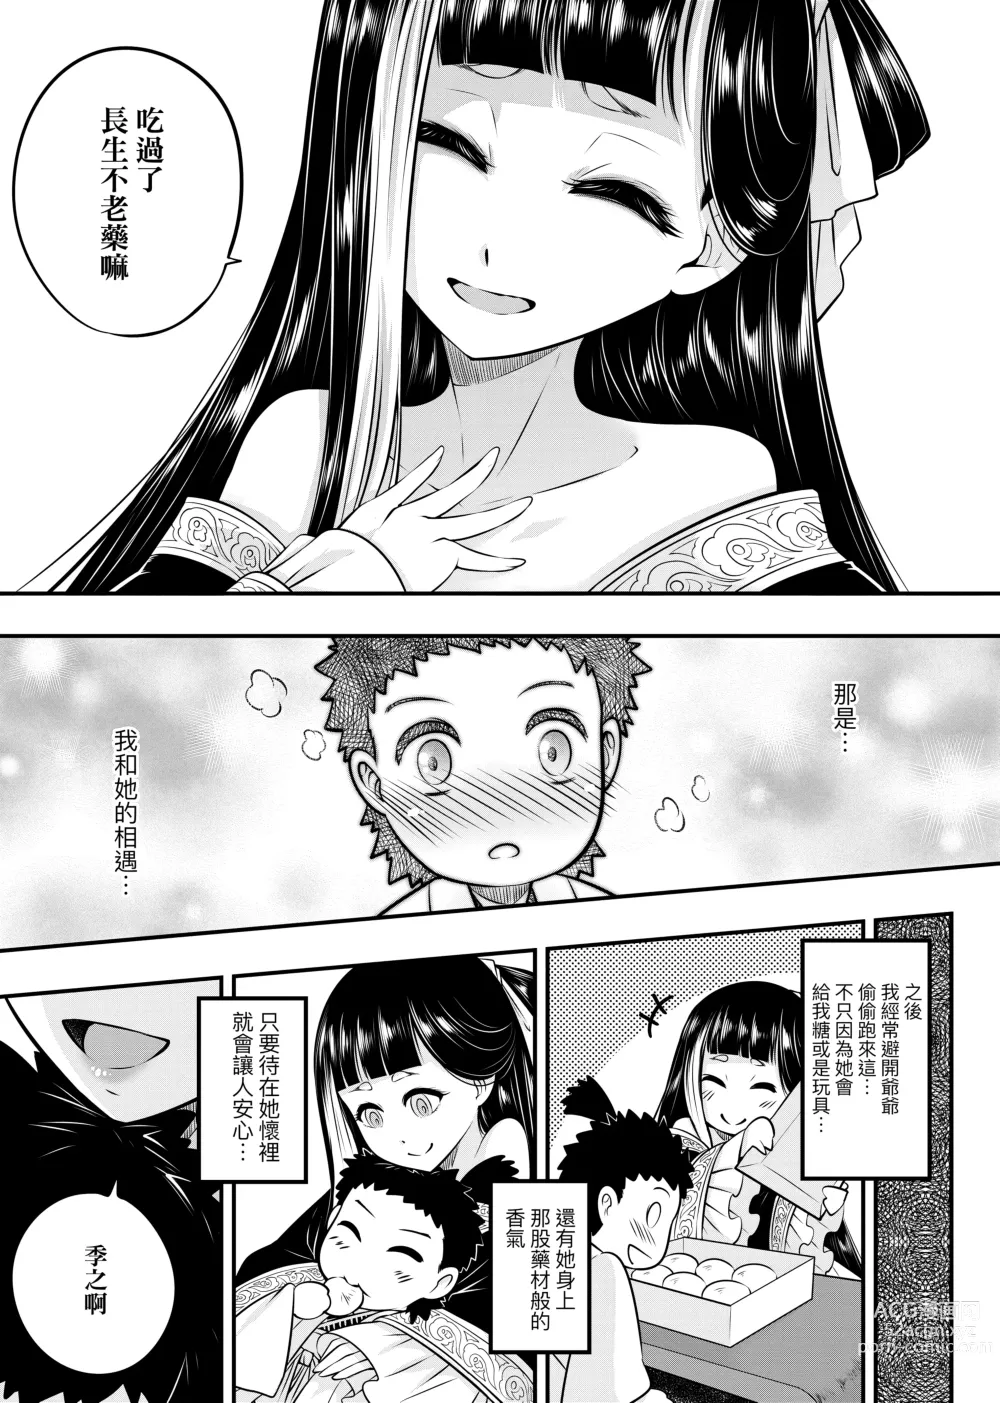 Page 10 of manga 永世流轉 (decensored)